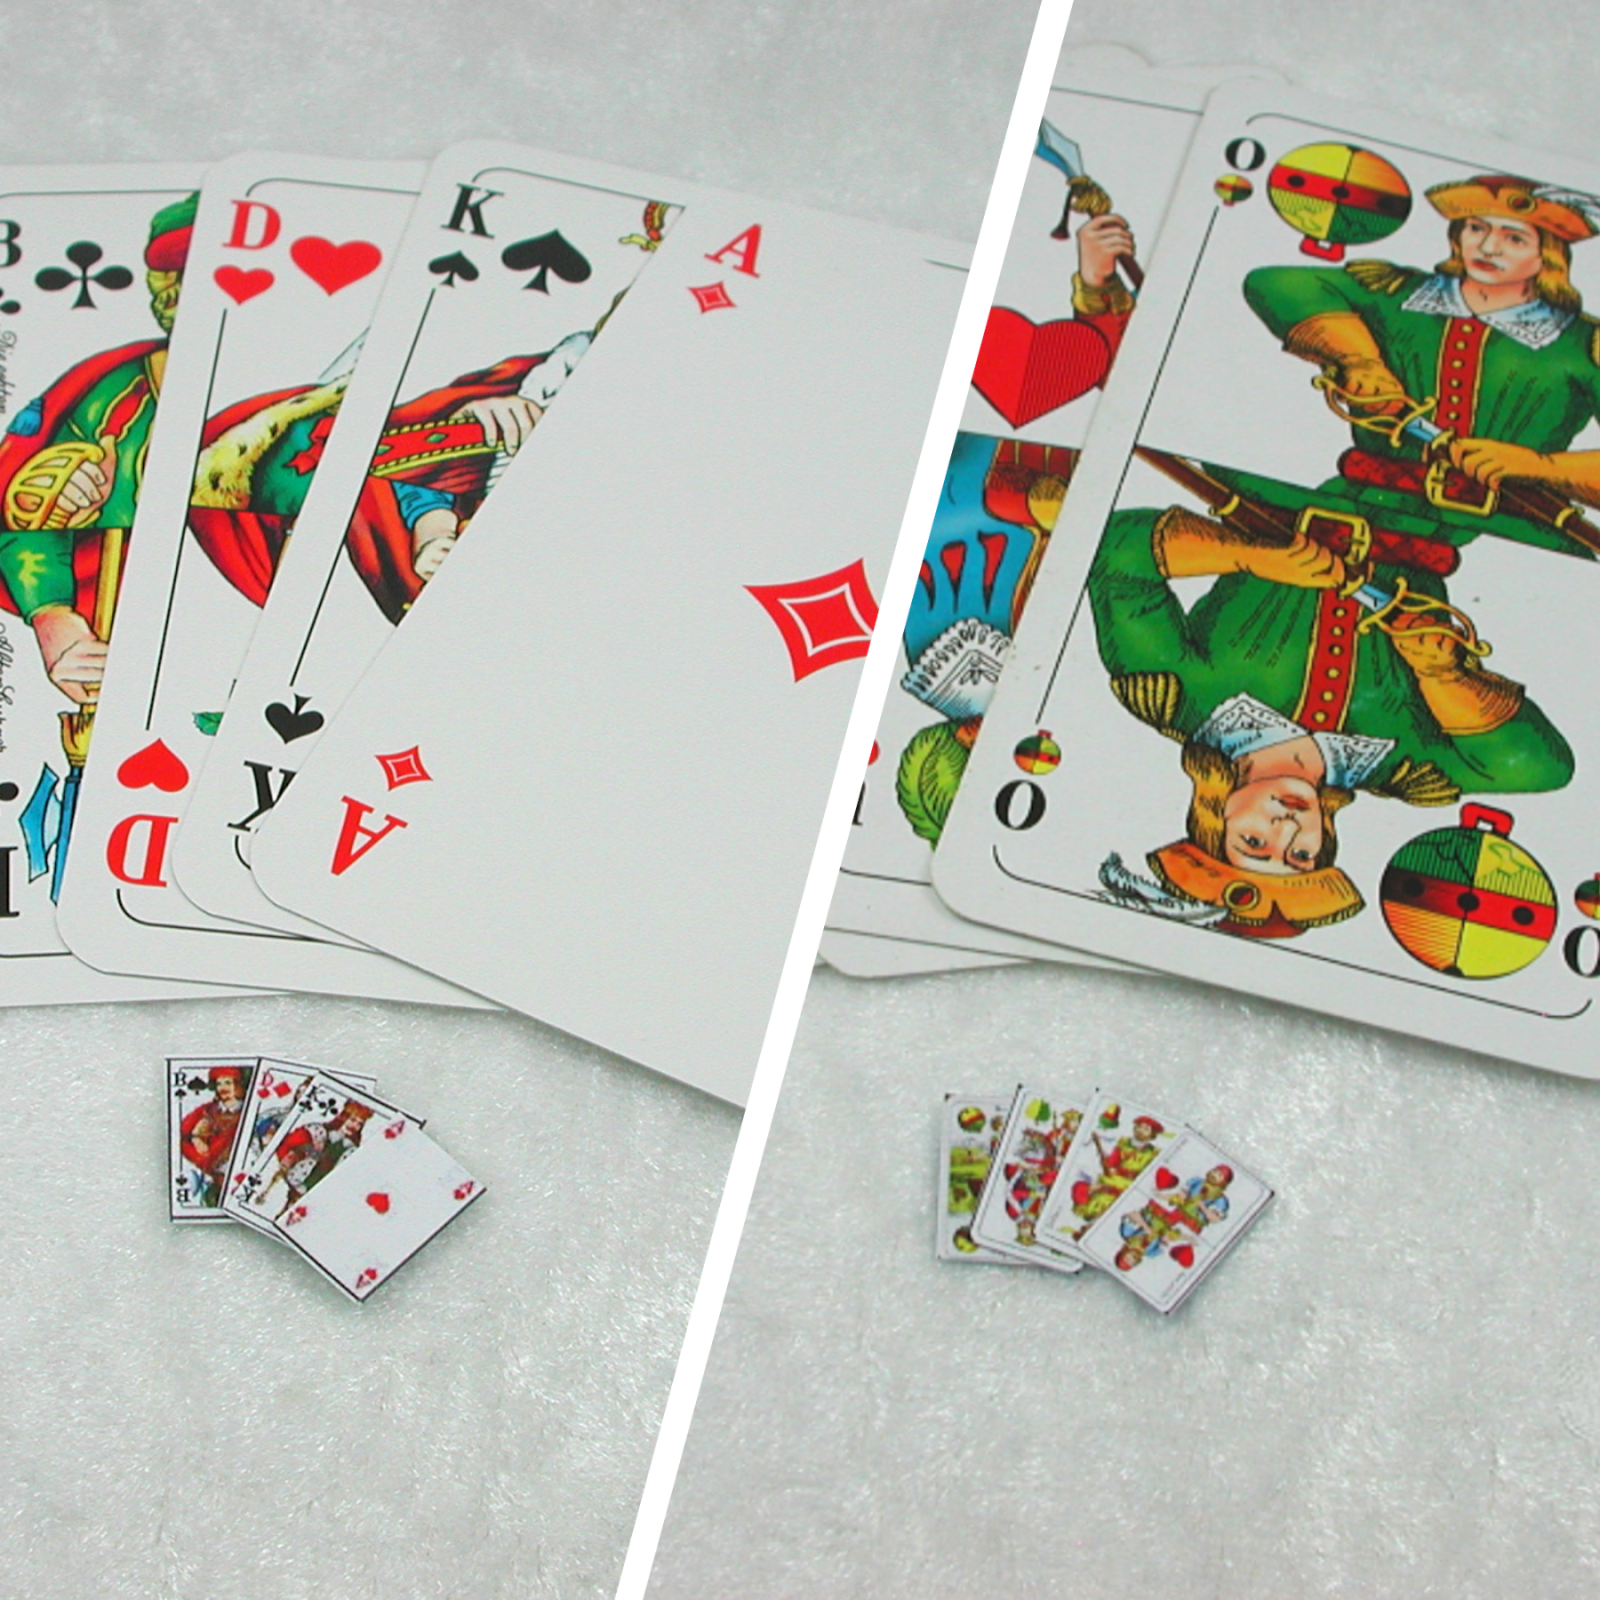 Kartenspiel in Miniatur, Skat oder Bayrische Version